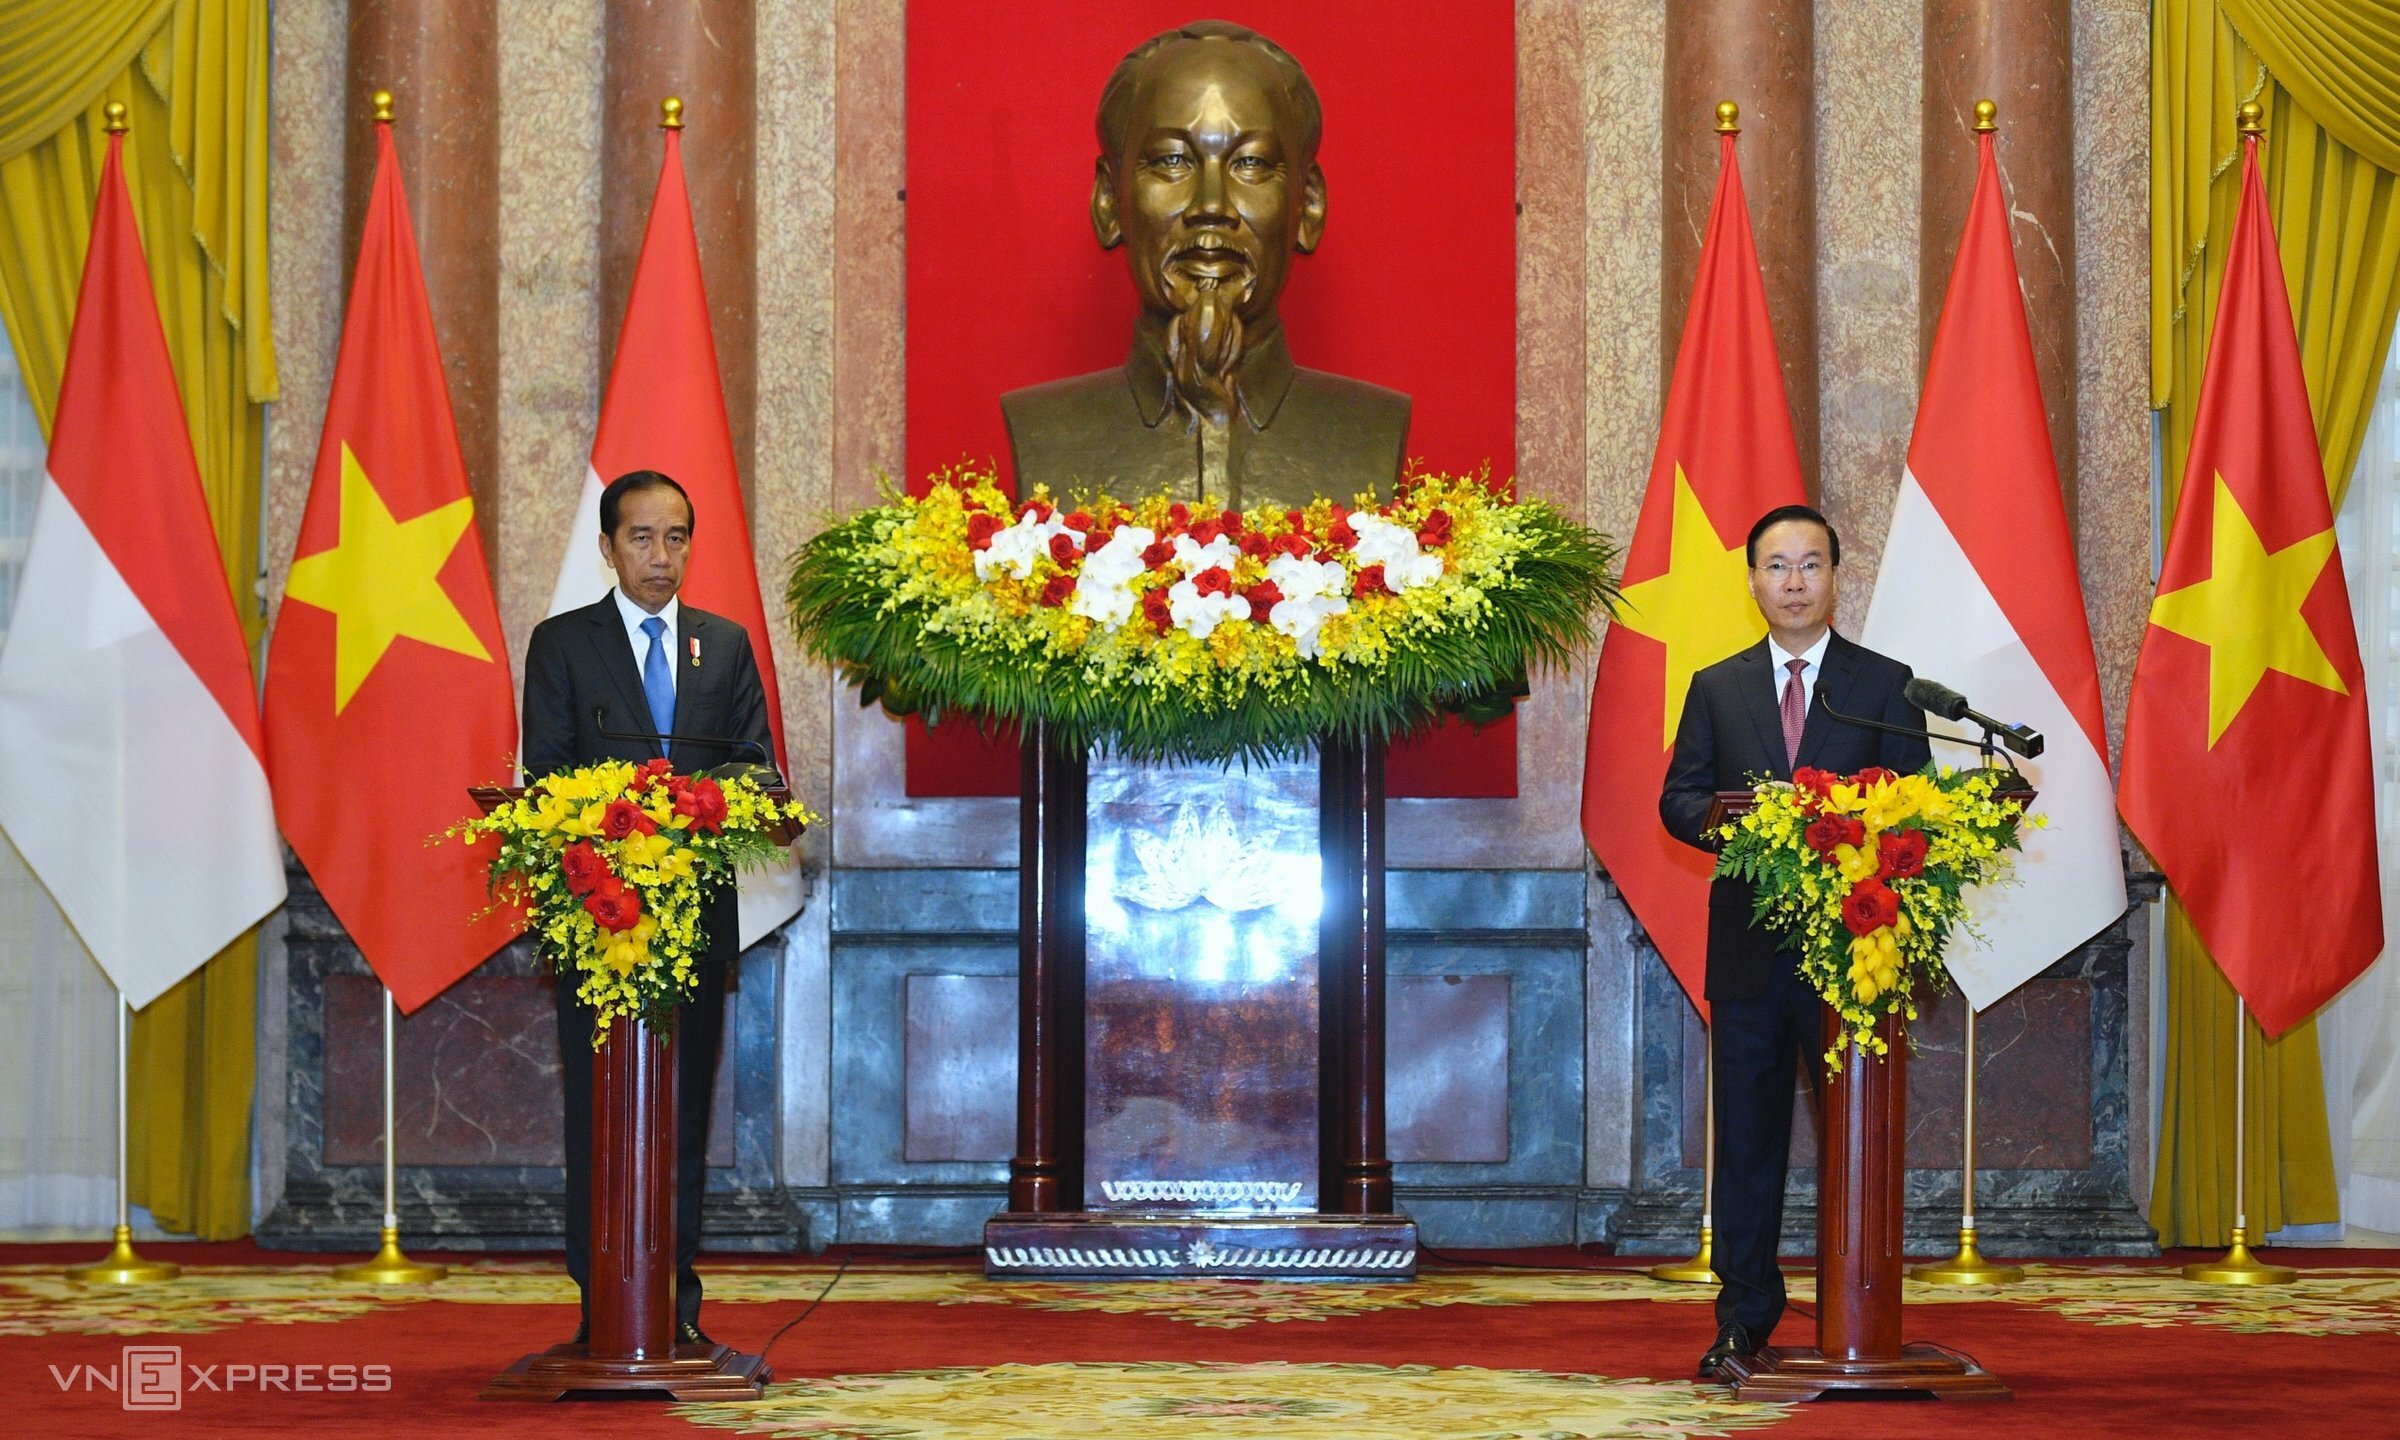 Chủ tịch nước Võ Văn Thưởng và Tổng thống Joko Widodo gặp gỡ báo chí tại Phủ Chủ tịch sáng 12/1. Ảnh: Giang Huy